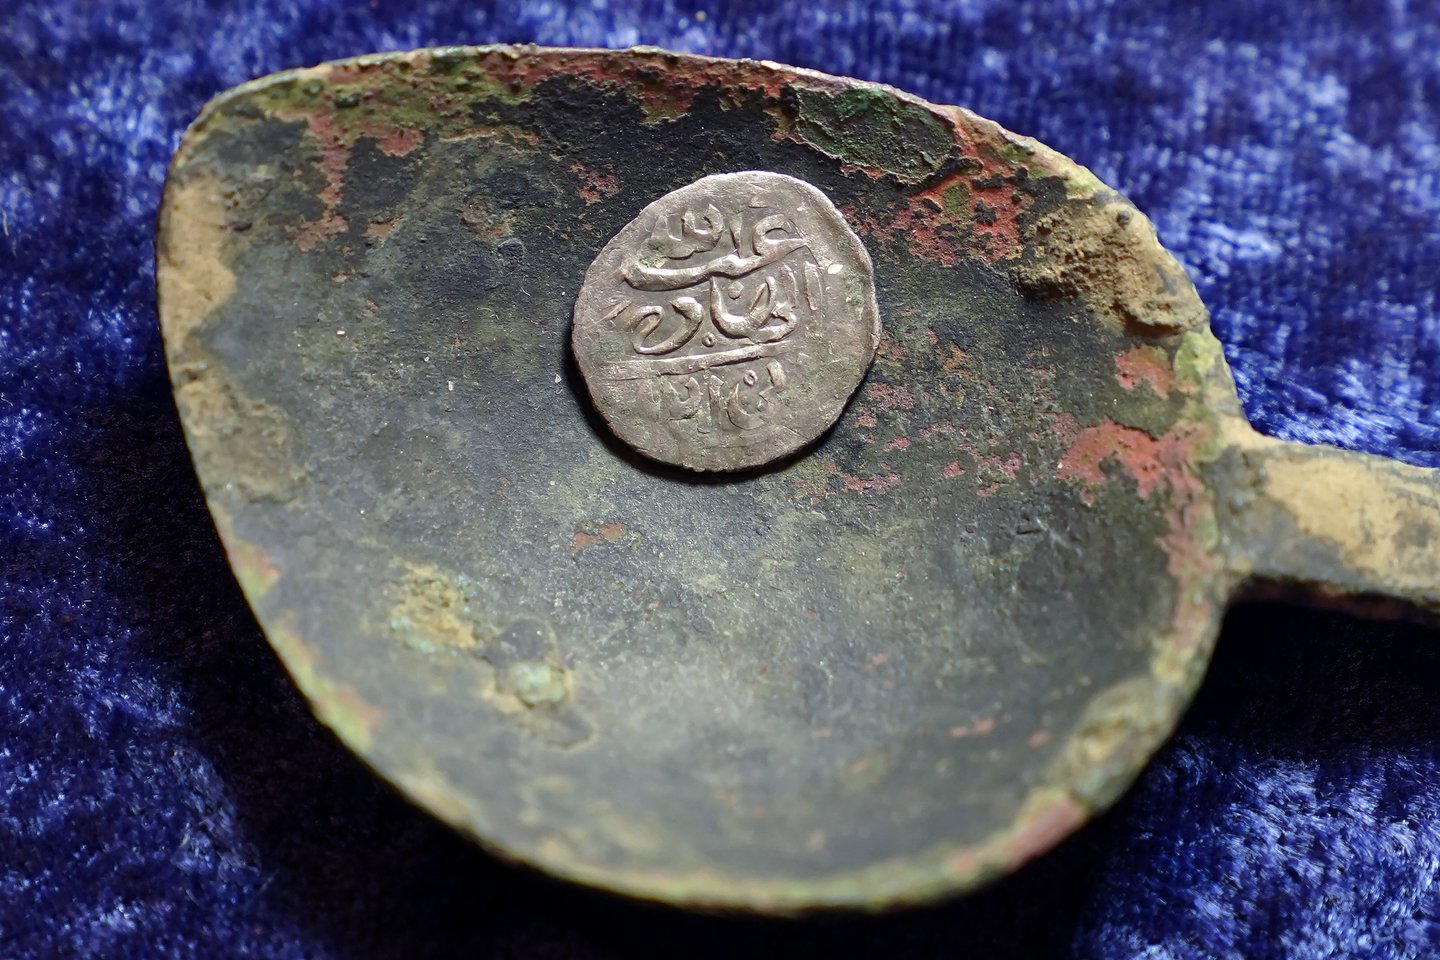  Sauja arabiškų sidabrinių monetų, rastų Naujojoje Anglijoje (JAV), gali būti paskutinės išlikusios istorijoje žinomiausio piratų užpuolimo relikvijos.<br> AP / Scanpix nuotr.